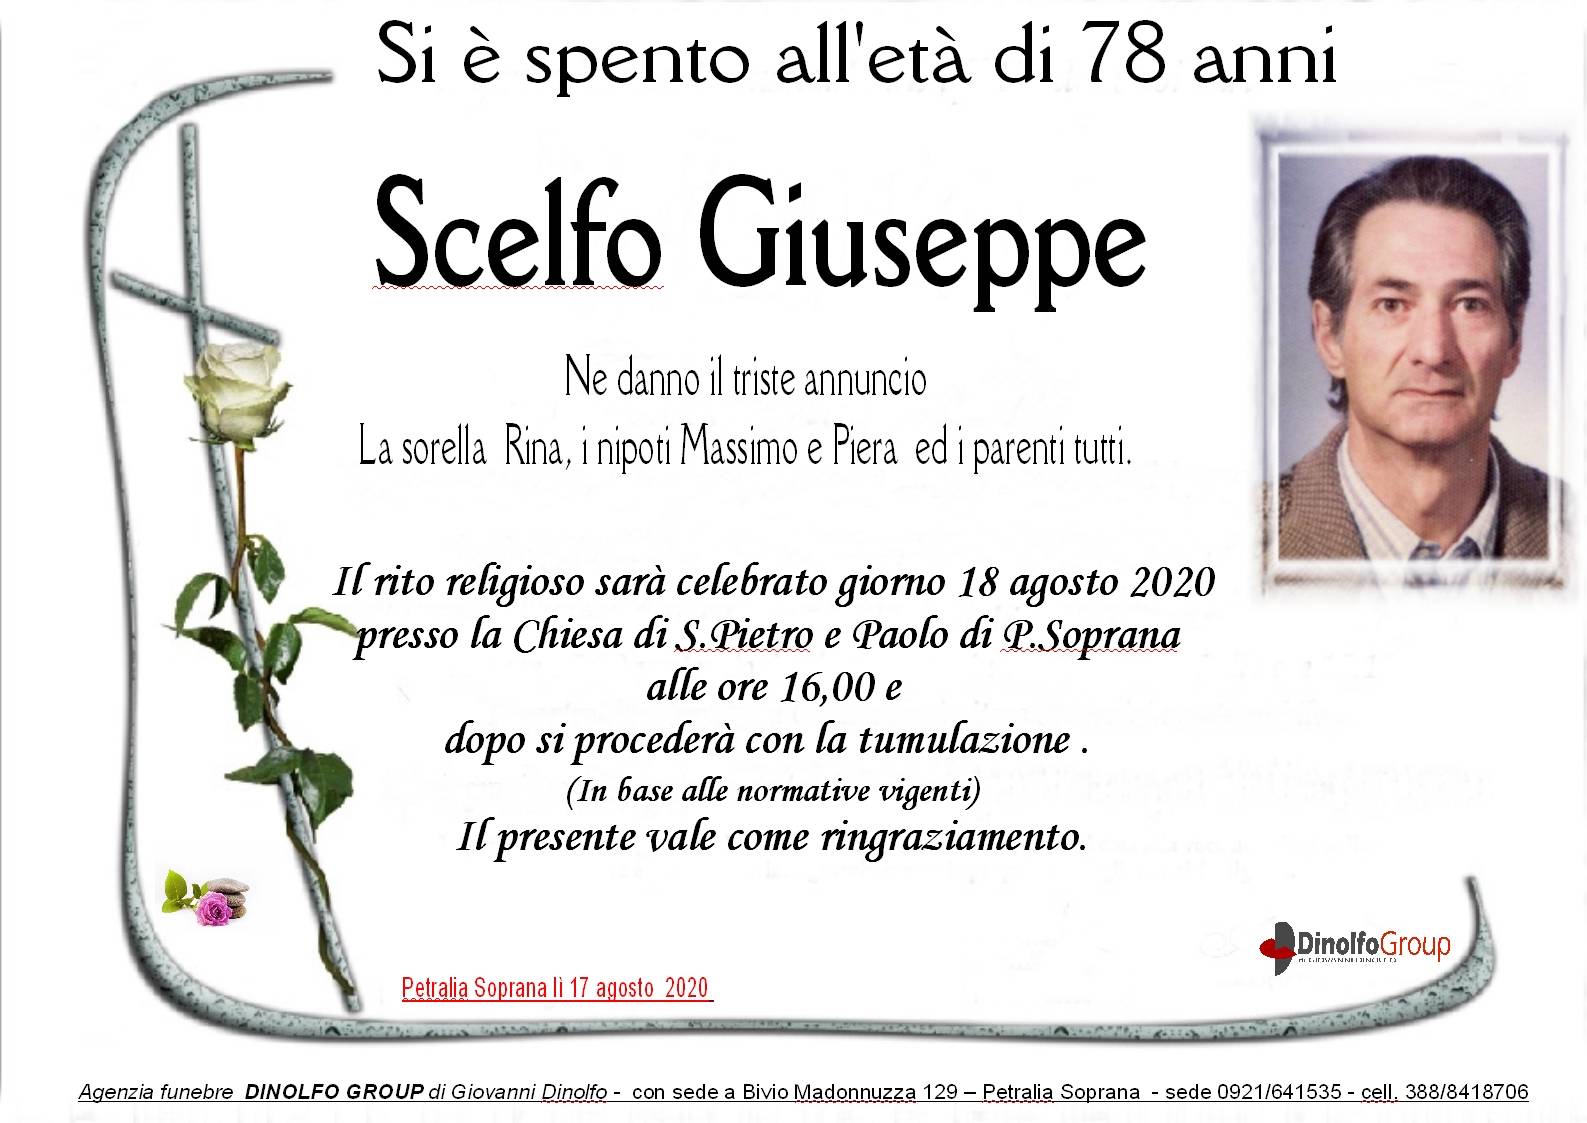 Giuseppe Scelfo